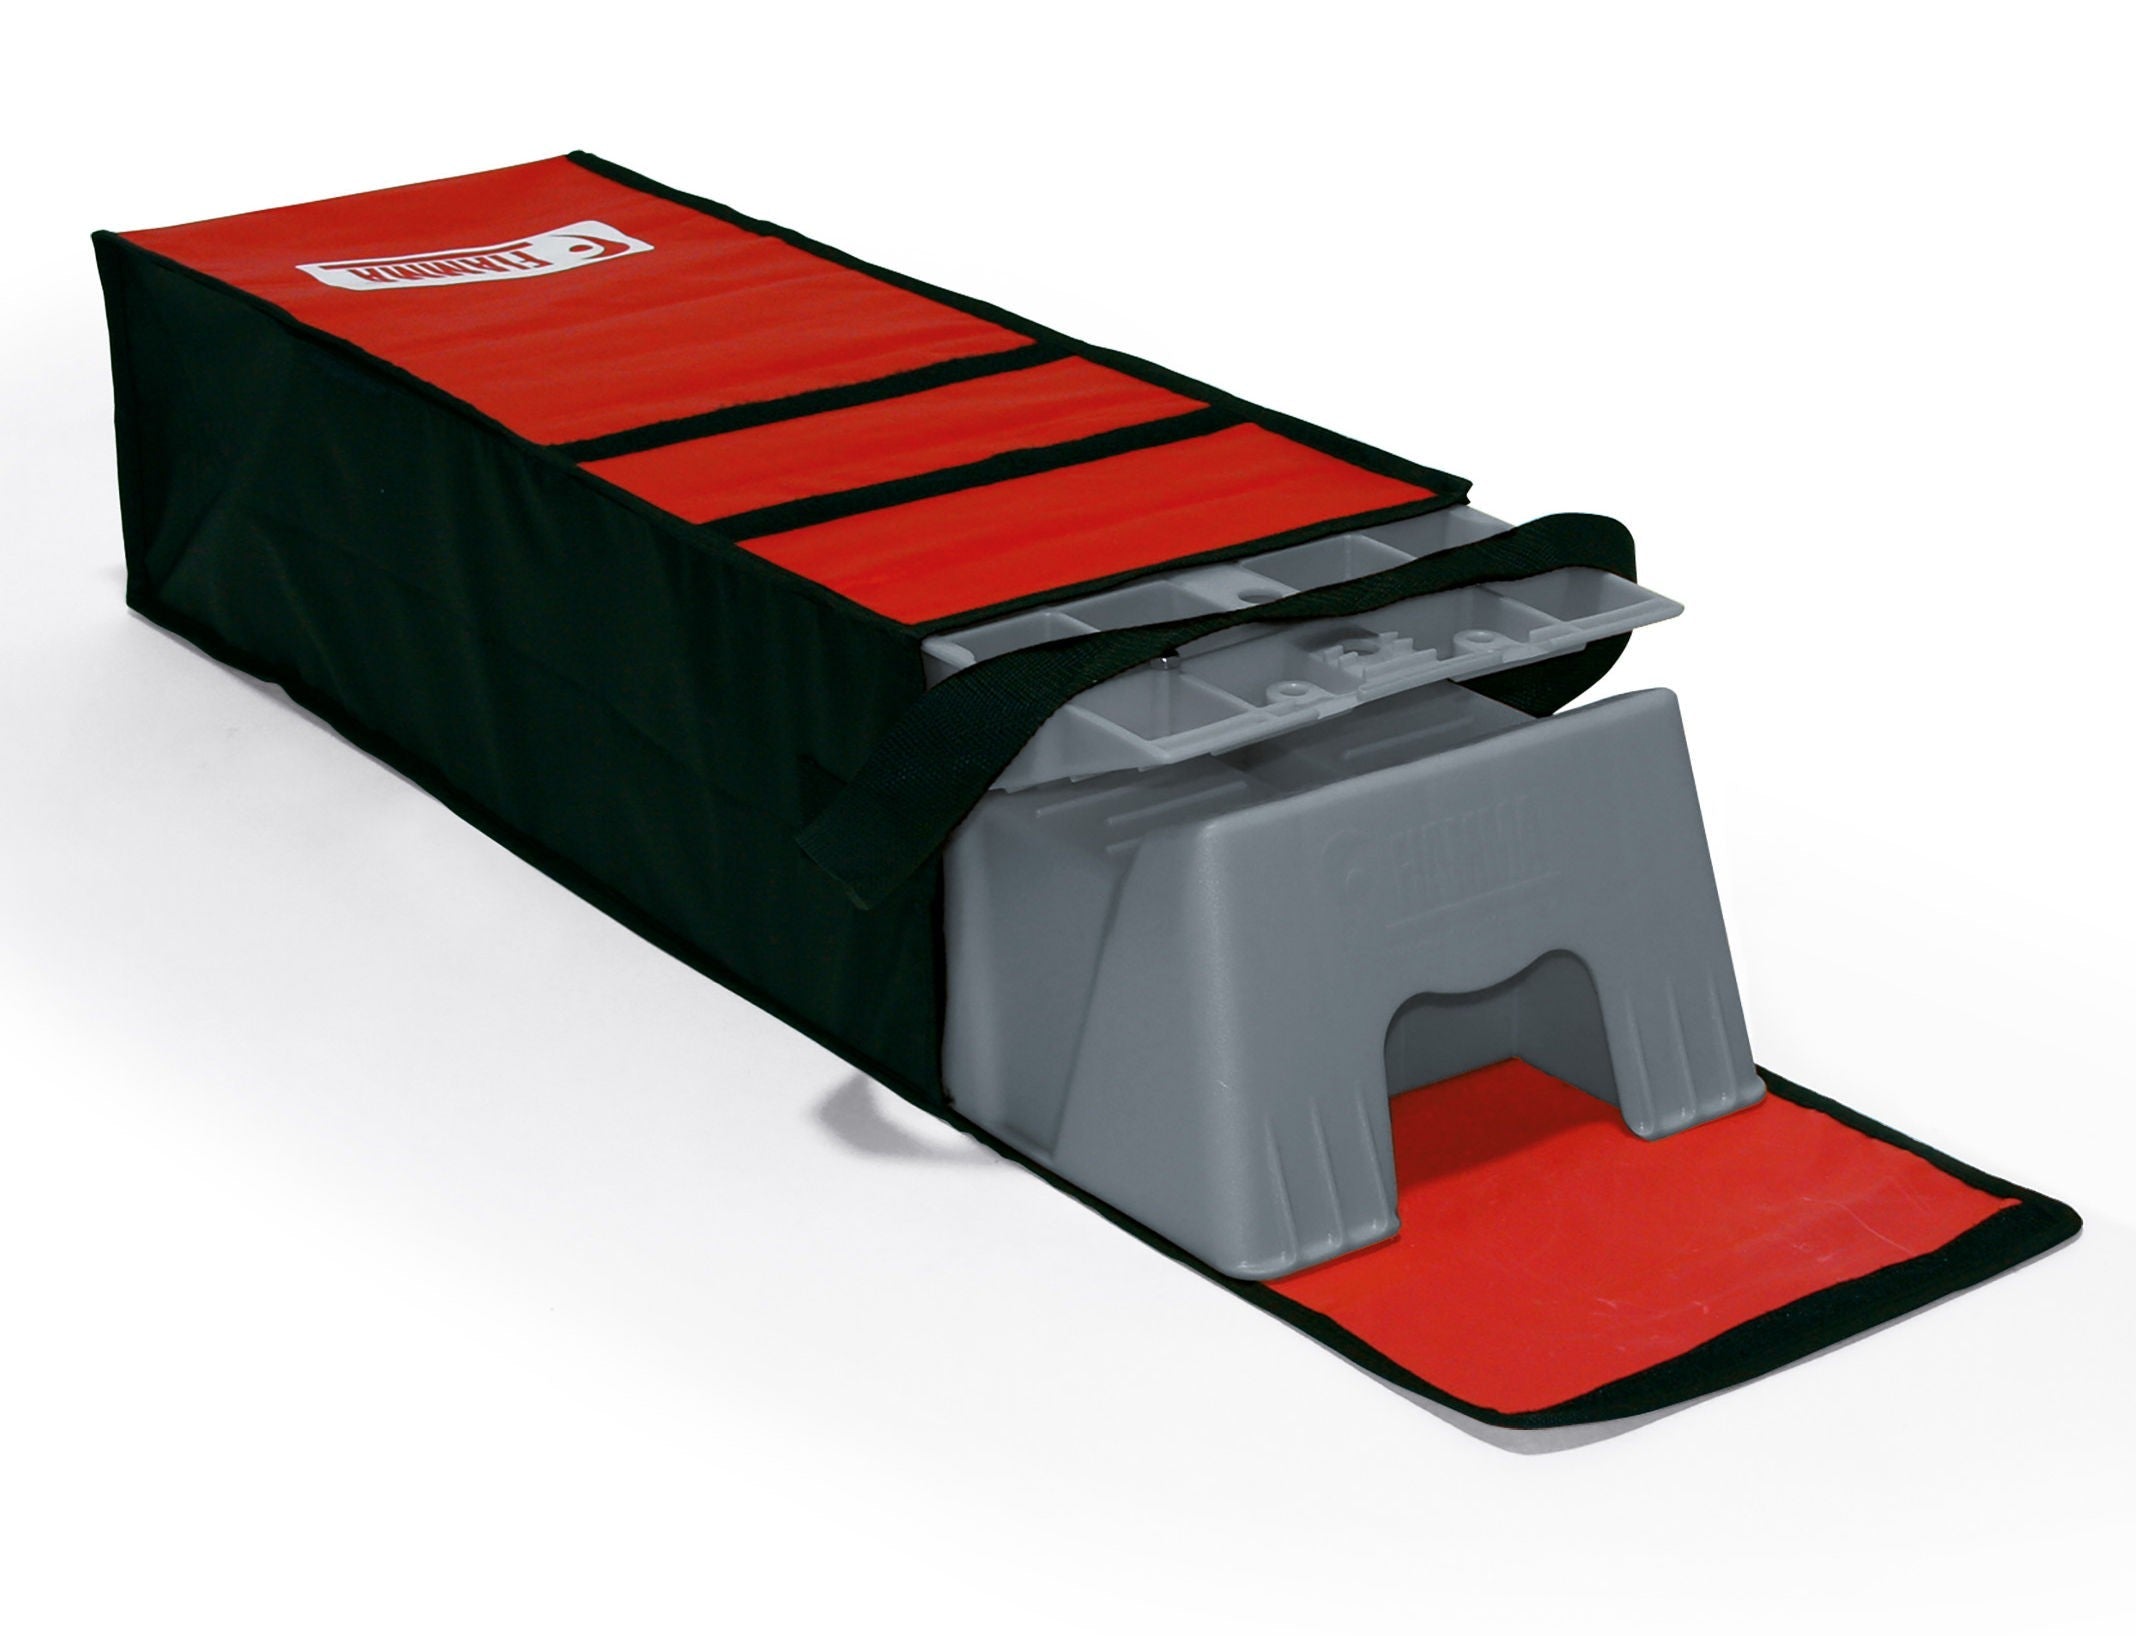 Fiamma Level Up Chocks - Jumbo Kit With Bag (max. 8t)-External Accessories-FIAMMA-QQ007323-97901-060- DC Leisure